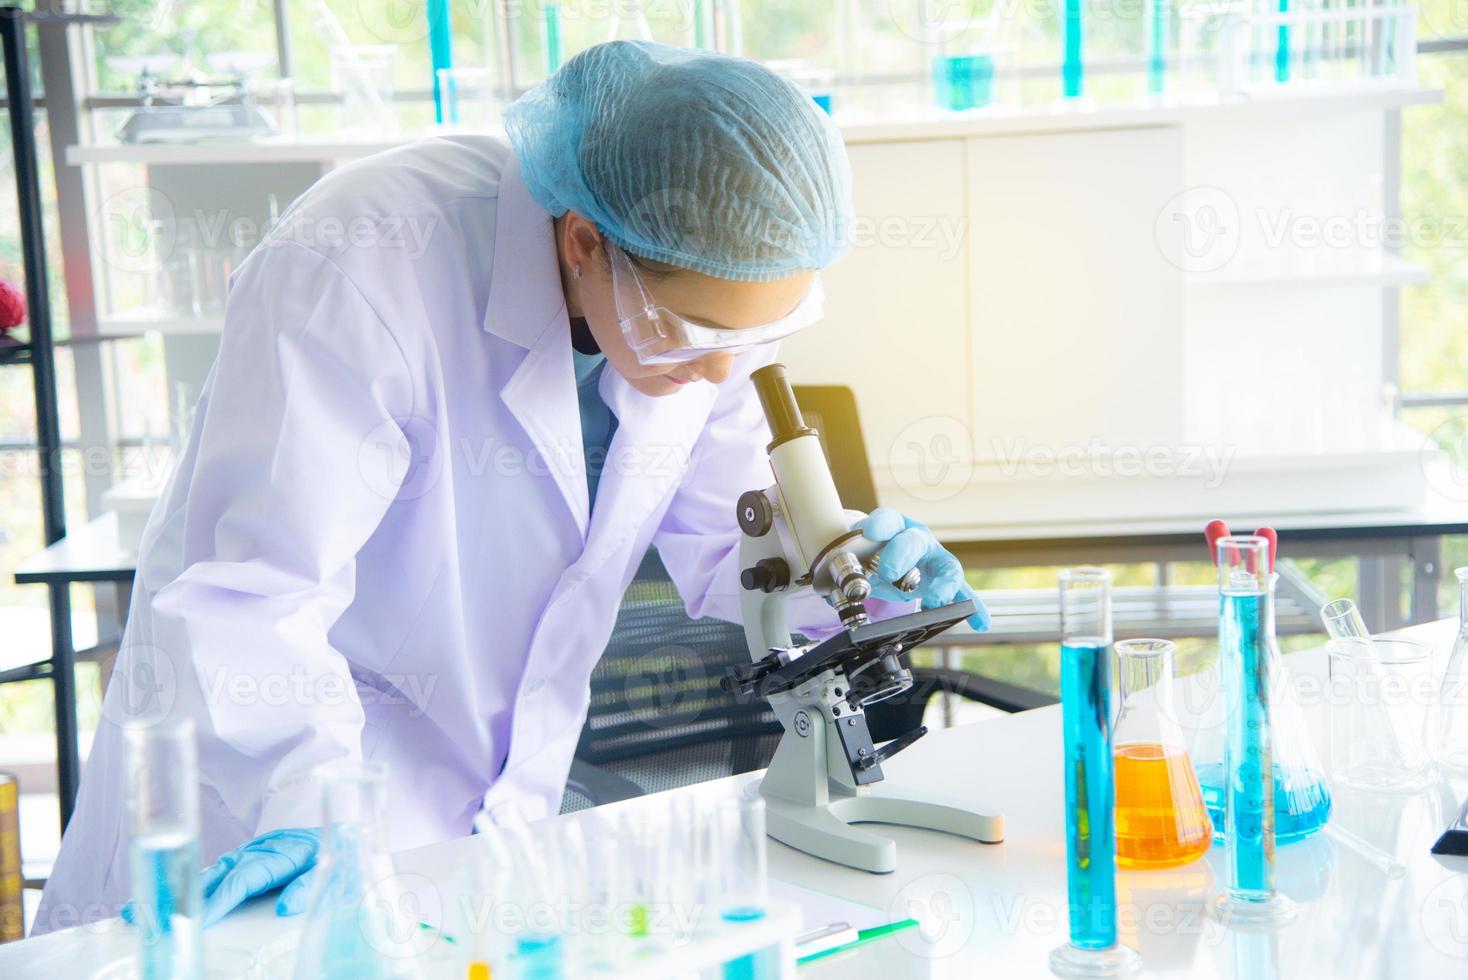 une scientifique, chercheuse, technicienne ou étudiante asiatique a mené des recherches ou des expériences à l'aide d'un microscope qui est un équipement scientifique dans un laboratoire médical, de chimie ou de biologie photo